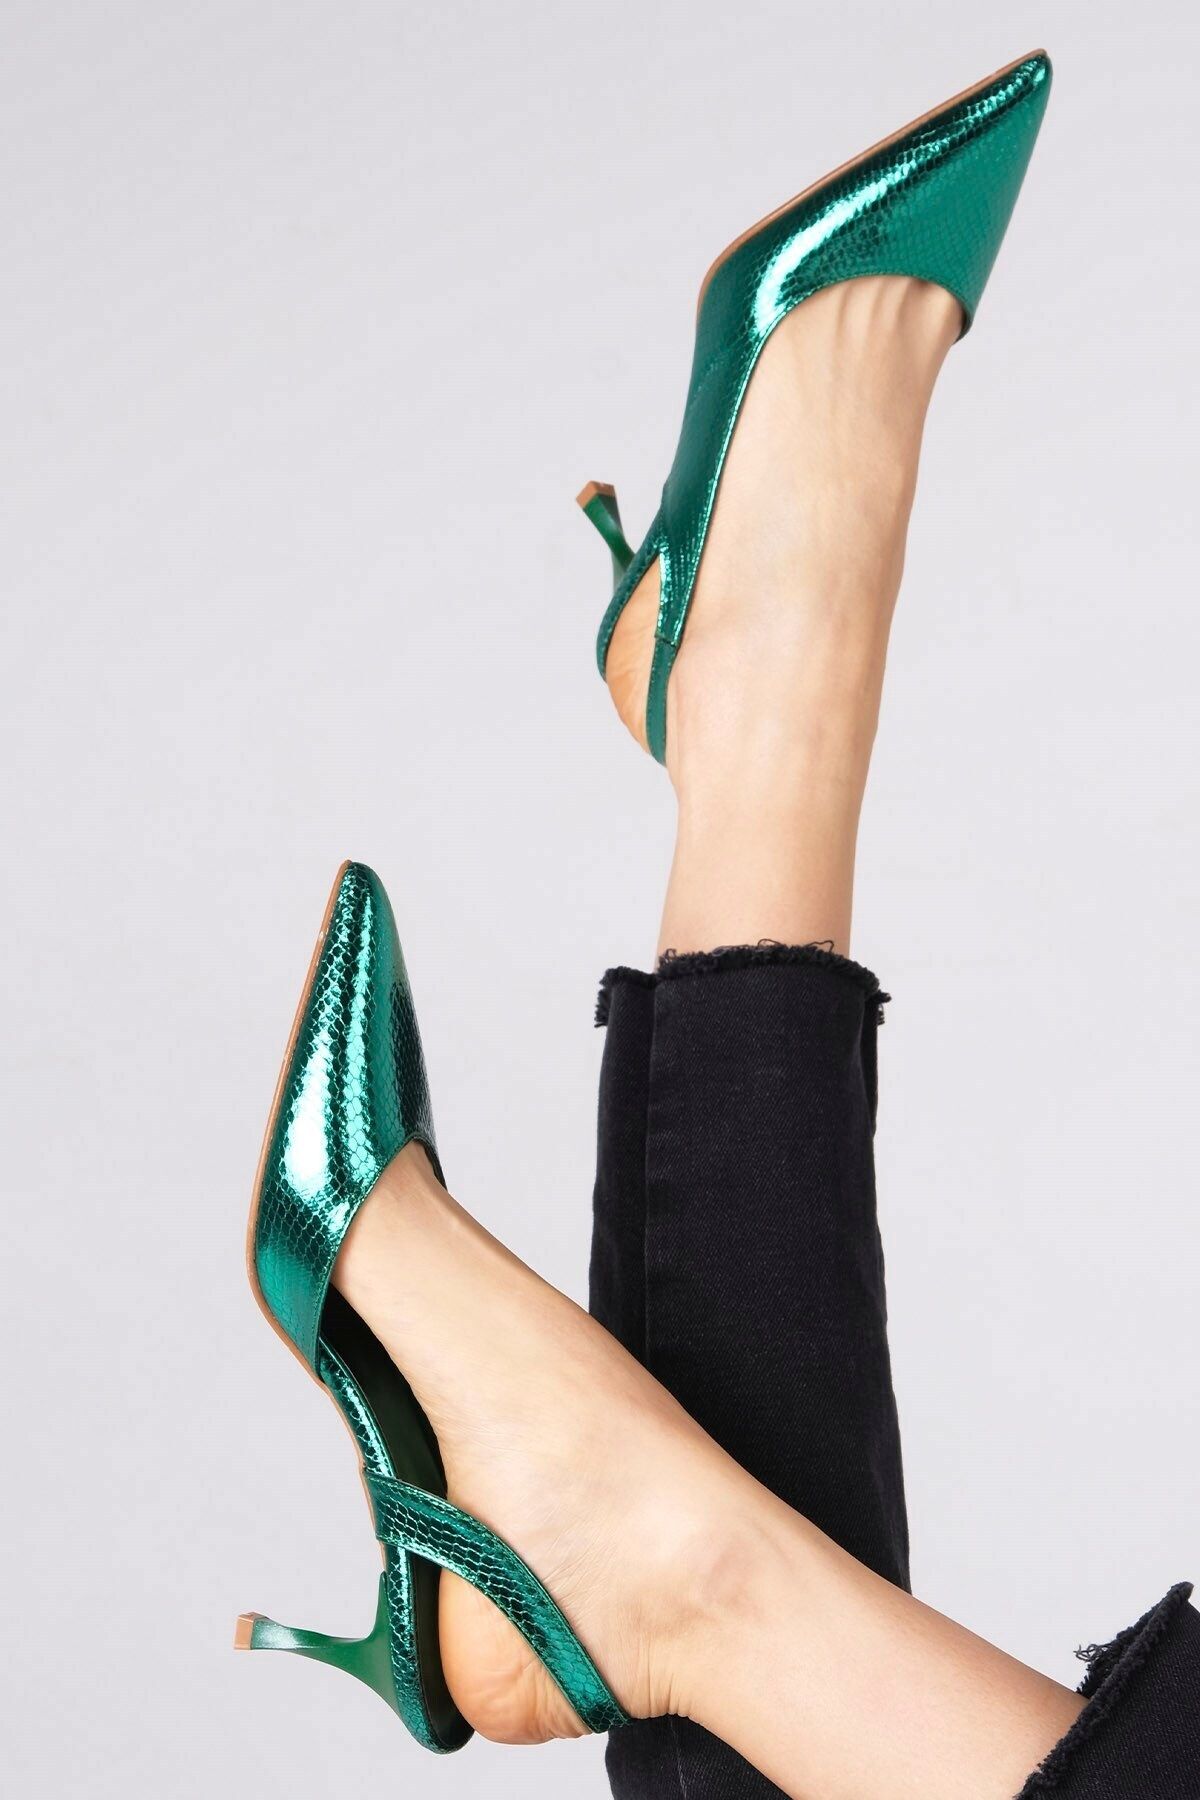 Mio Gusto Metalik Yeşil Renk Yılan Derisi Desenli Kadın Topuklu Ayakkabı